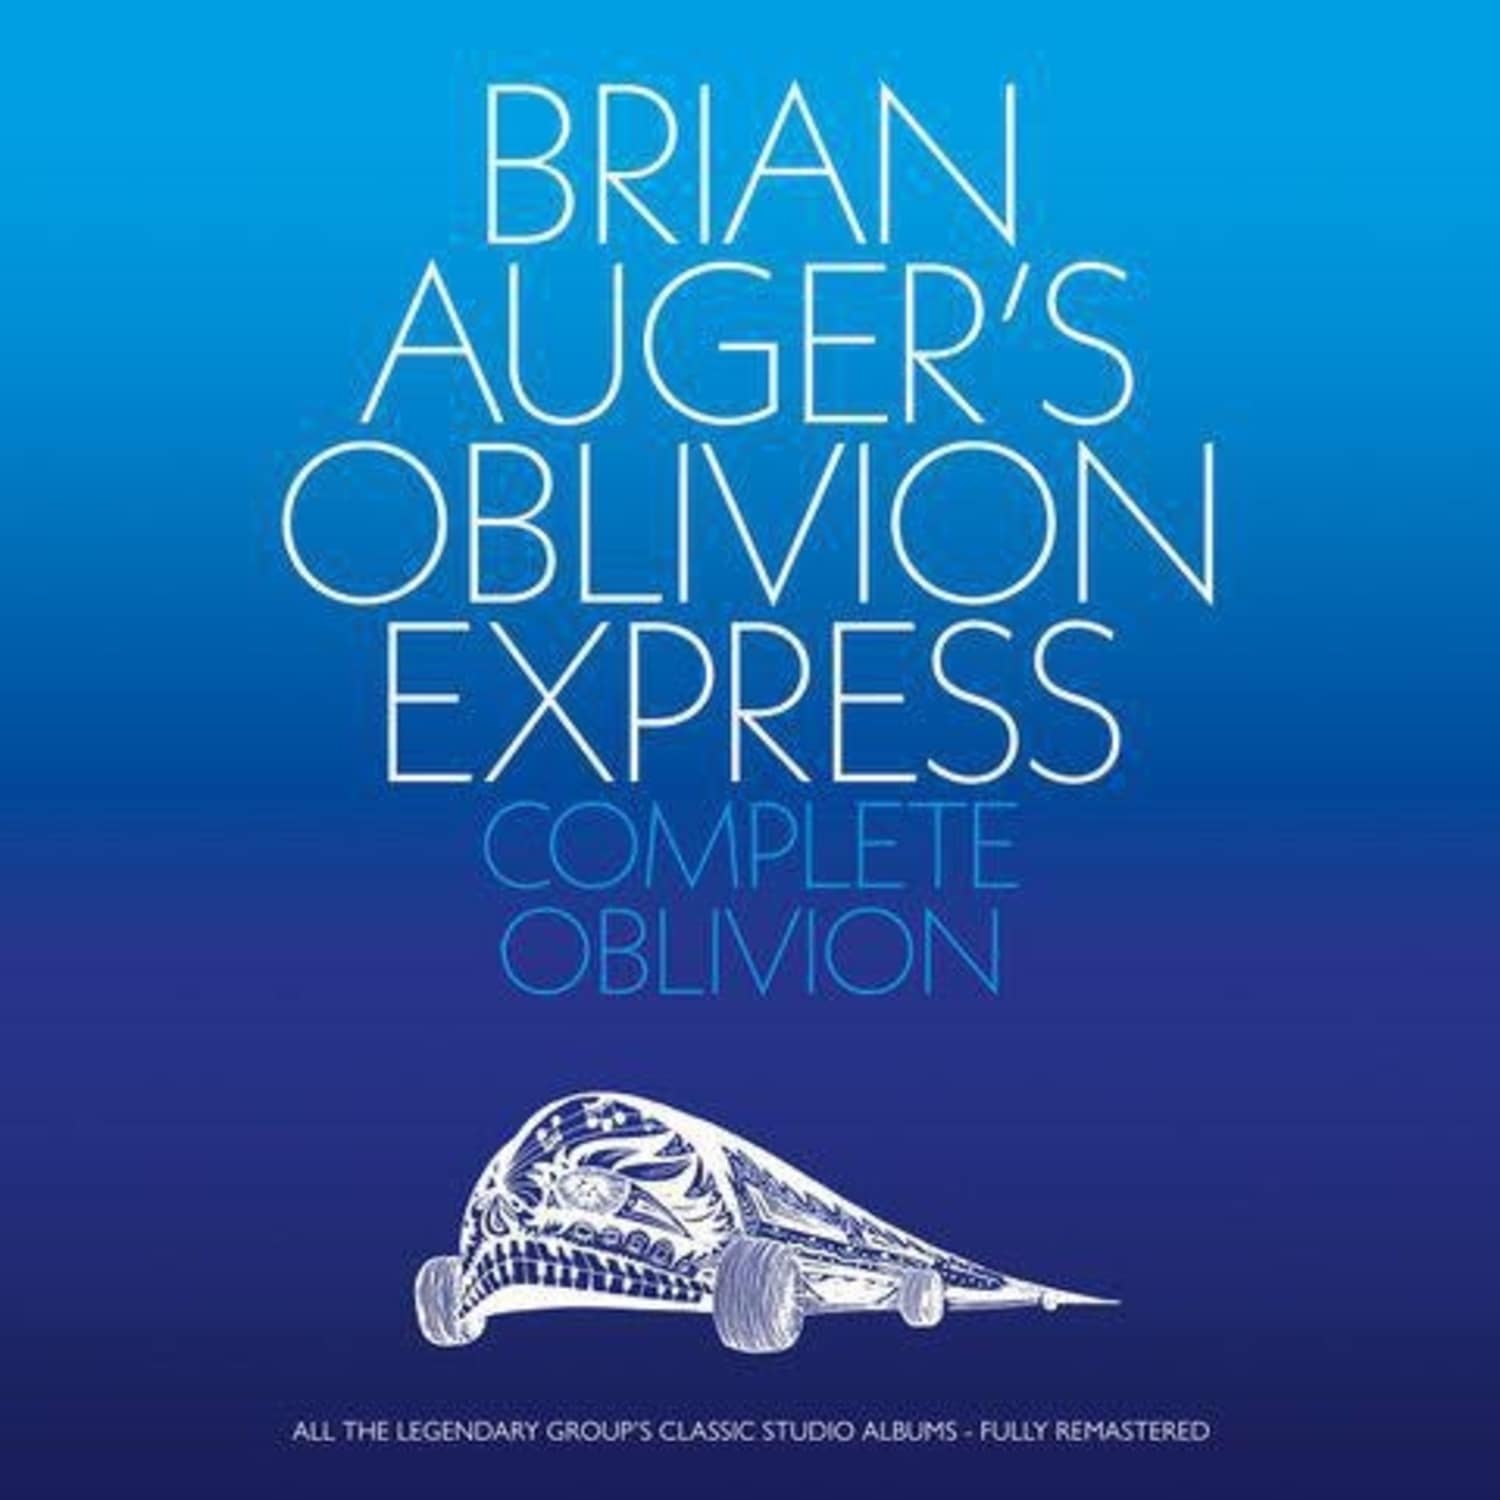 Brian Auger / Oblivion Express - COMPLETE OBLIVION 